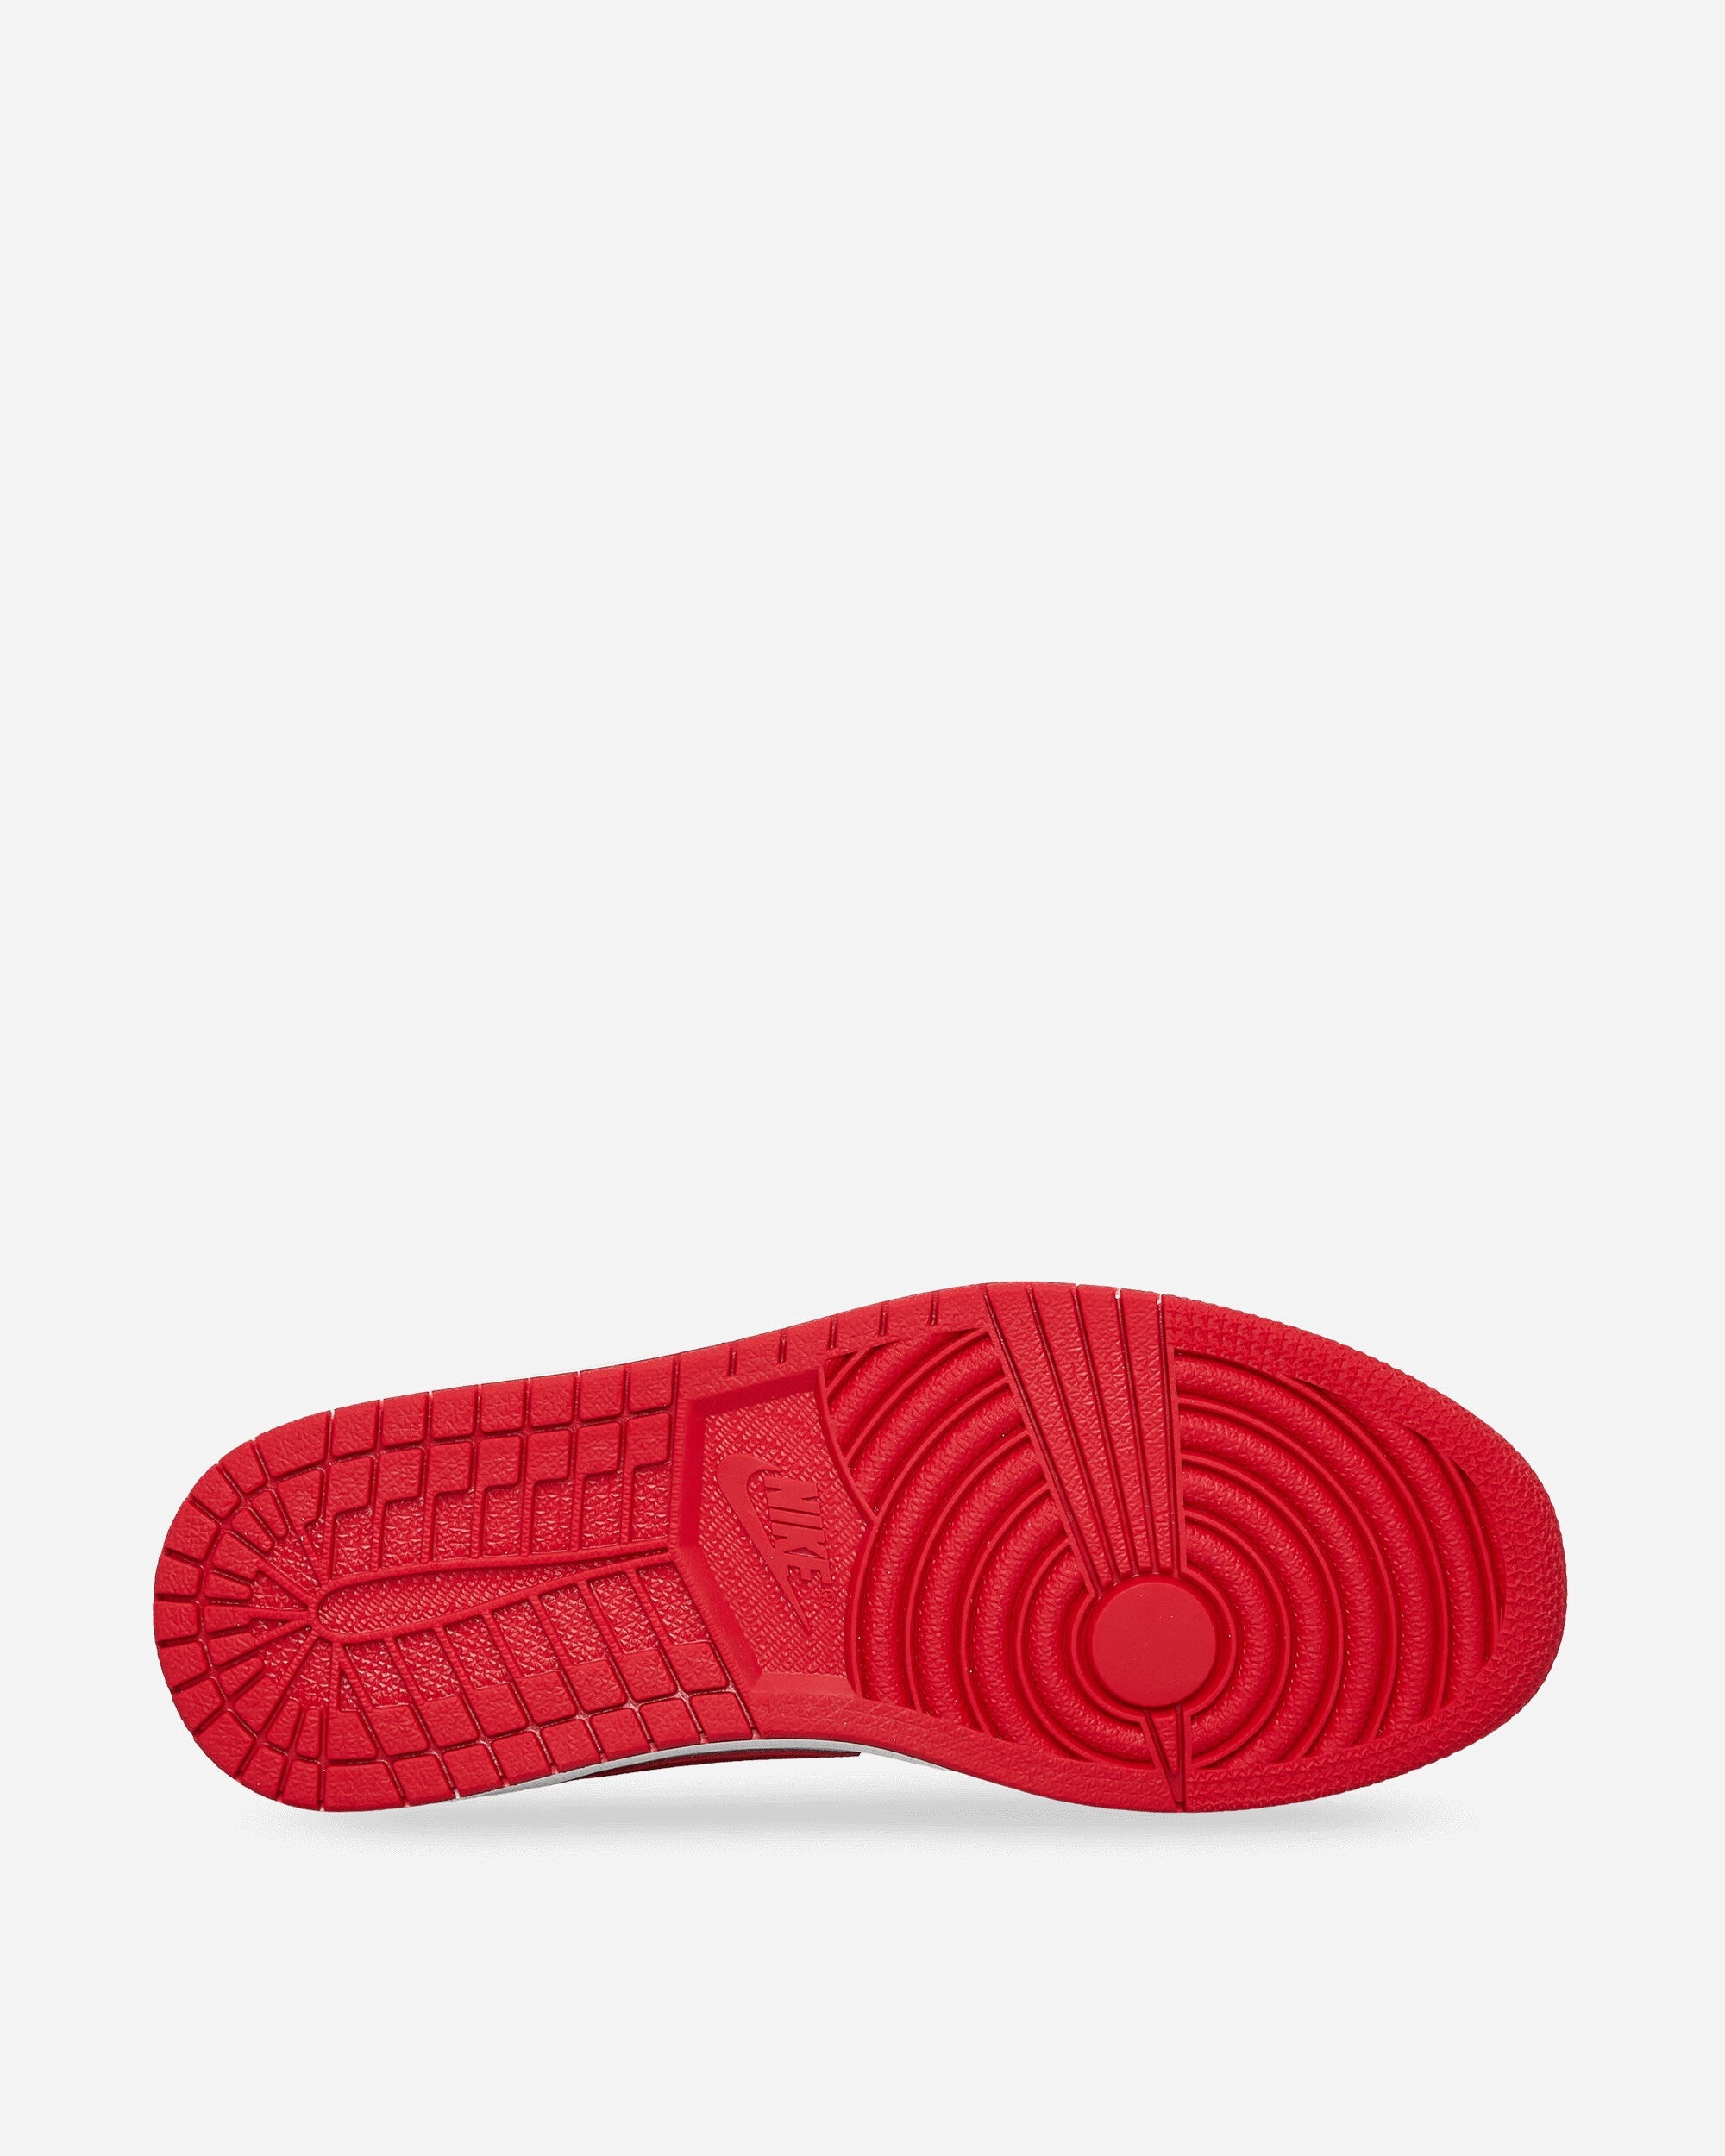 Air Jordan 1 Retro Low OG Sneakers Og White / University Red /White - 5